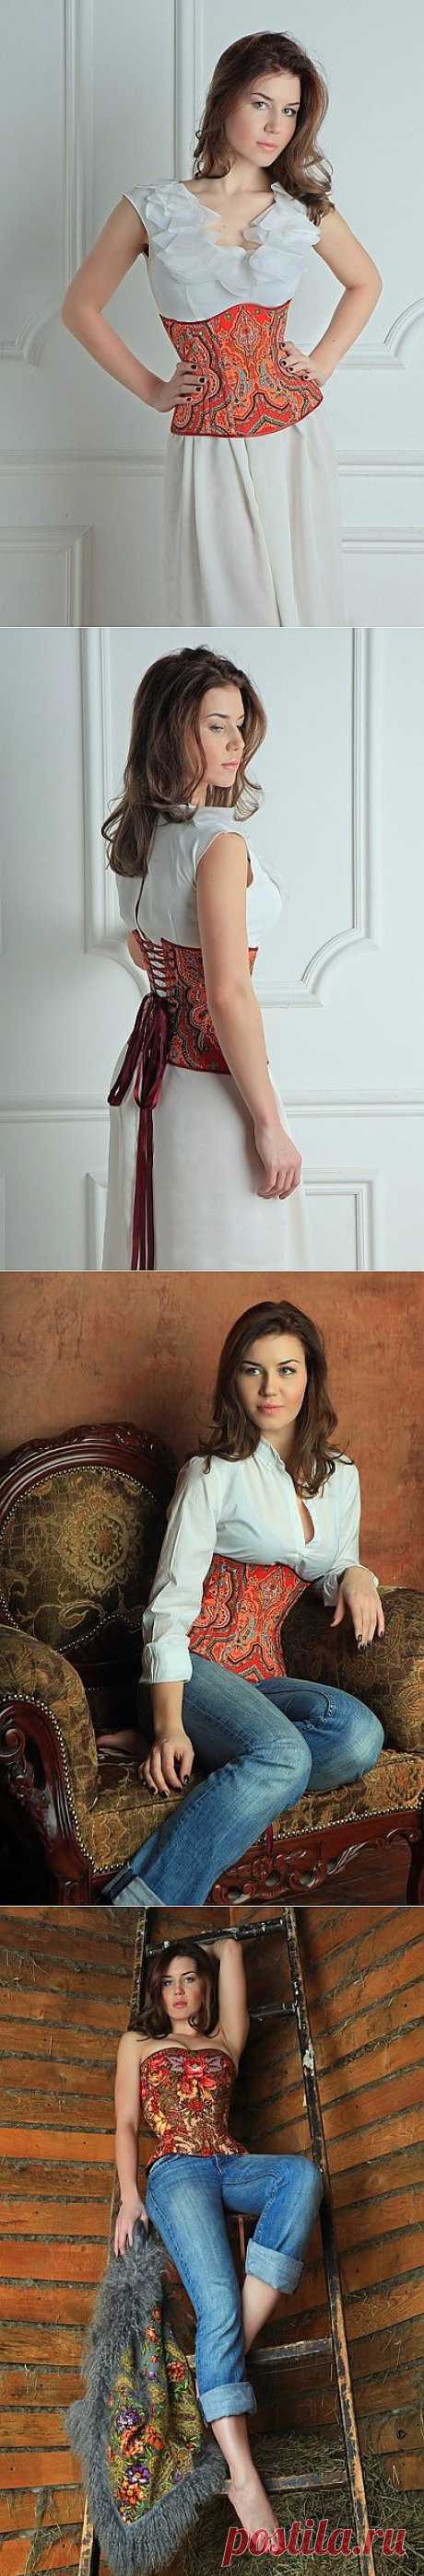 Два корсета из павлопосадских платков. / Платки / Модный сайт о стильной переделке одежды и интерьера